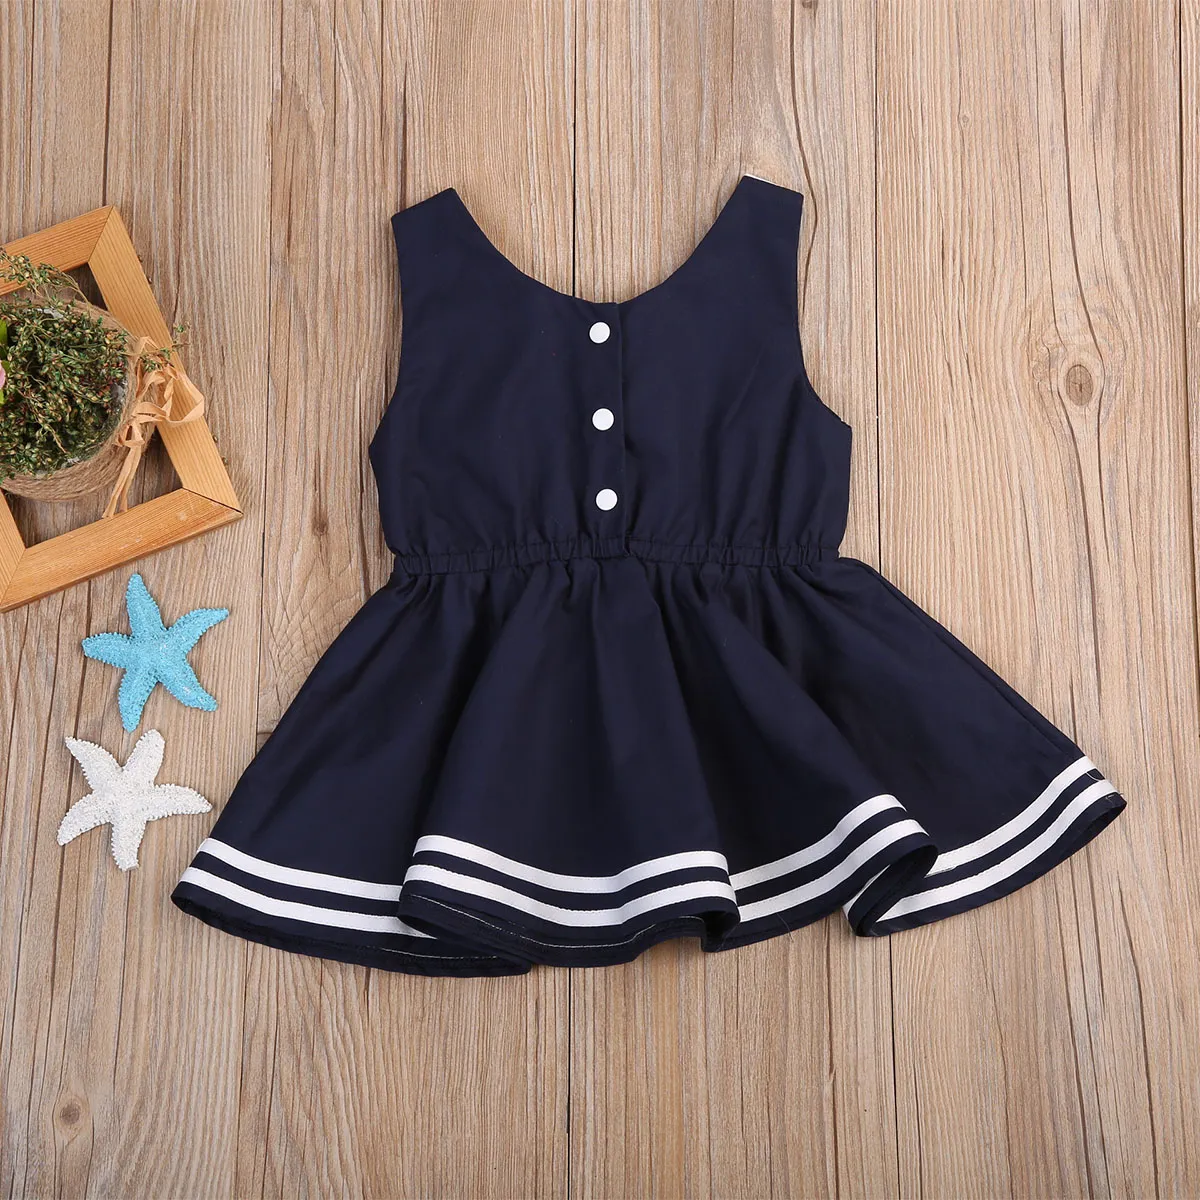 Garota garotinha vestido marinho marinheiro colarinho infantil para crianças roupas listradas vestidos boutique garotas trajes de praia de vestido de verão do vestido de verão S7006394